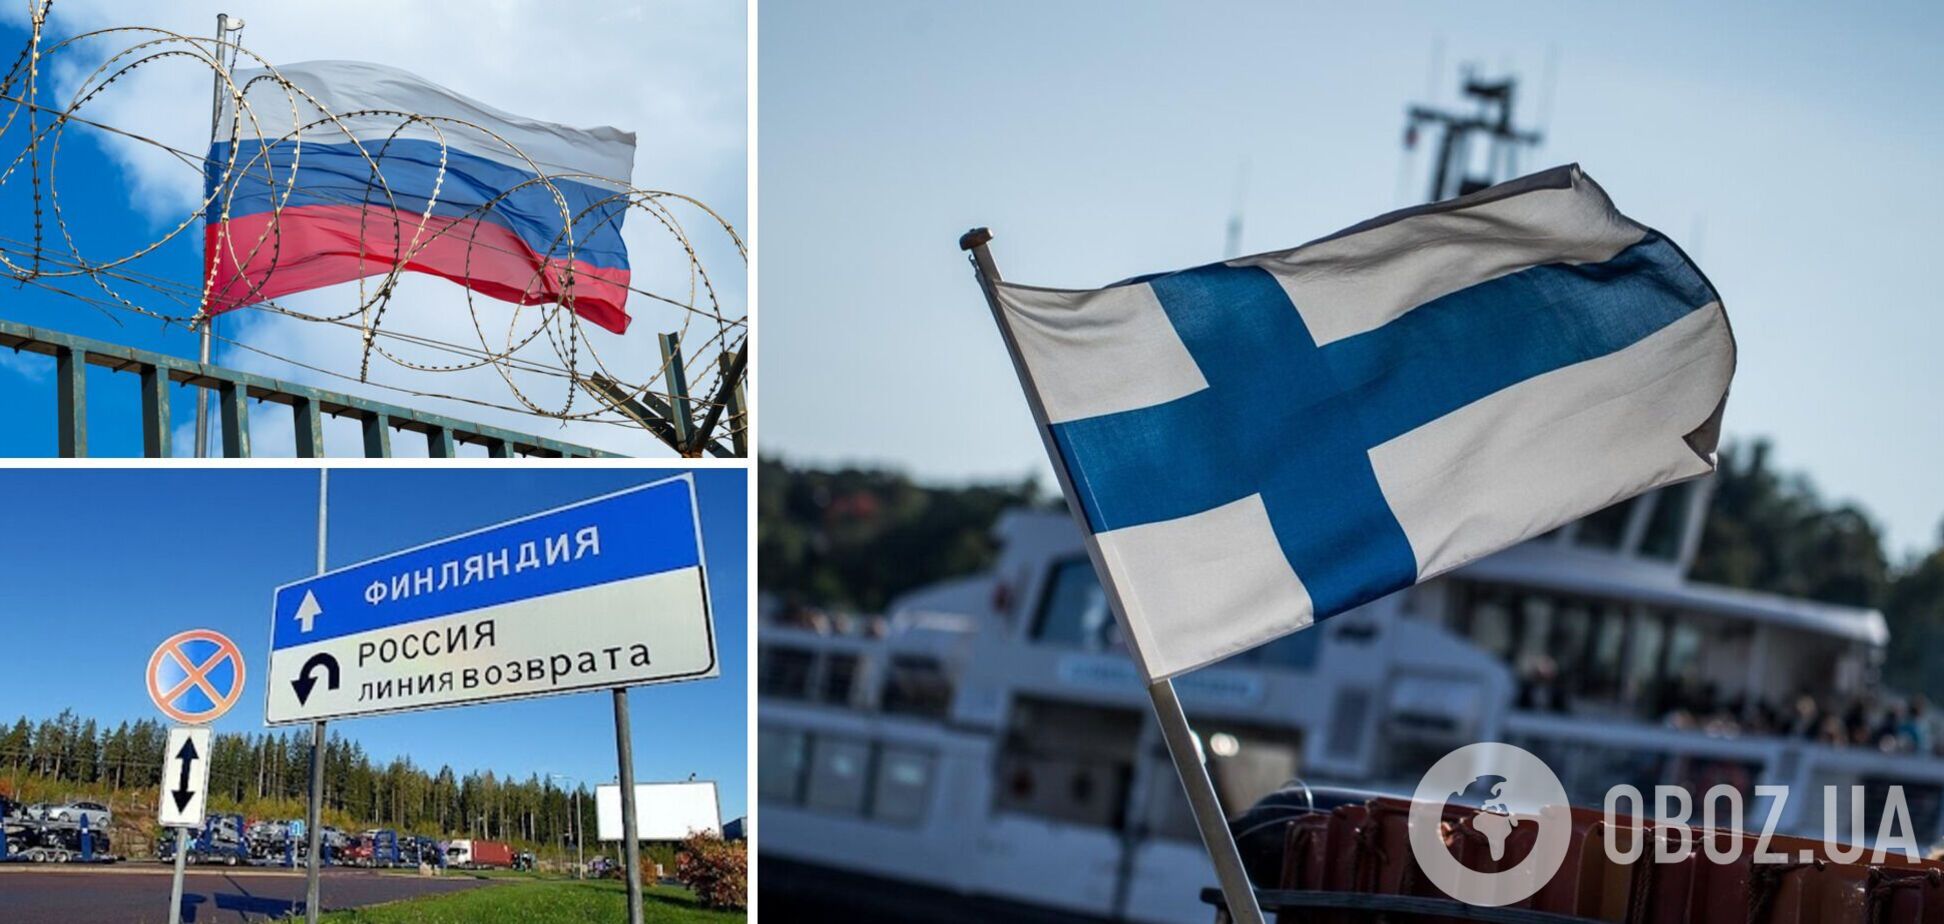 Финляндия перестанет пускать граждан РФ